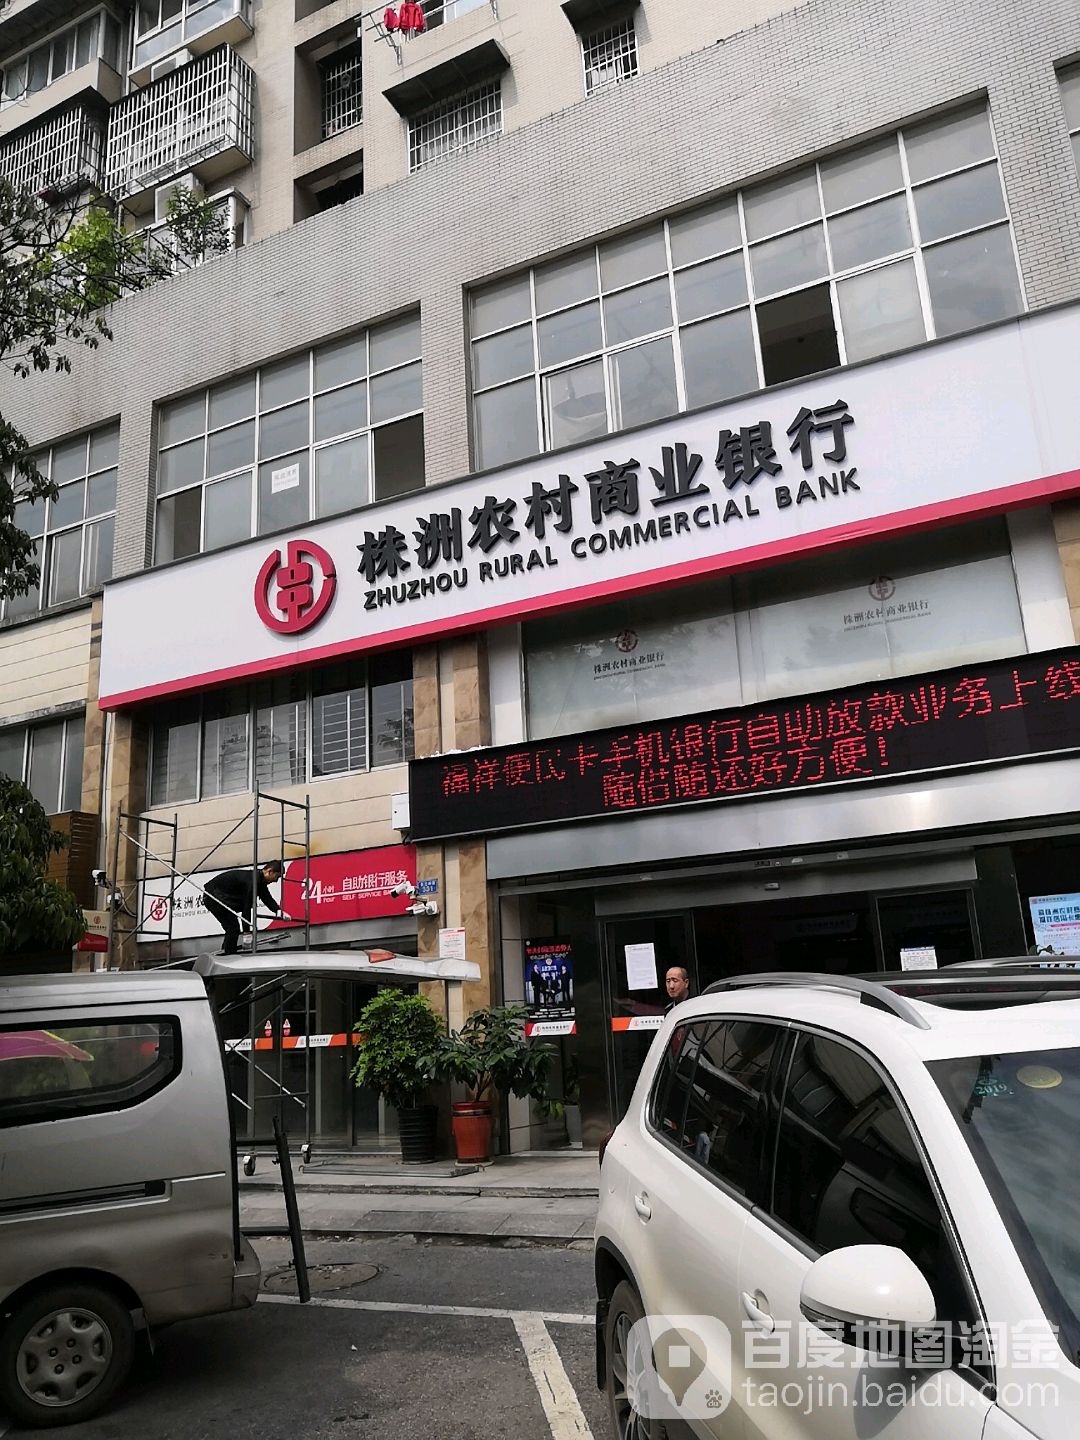 株洲农村商业银行(天台山支行)